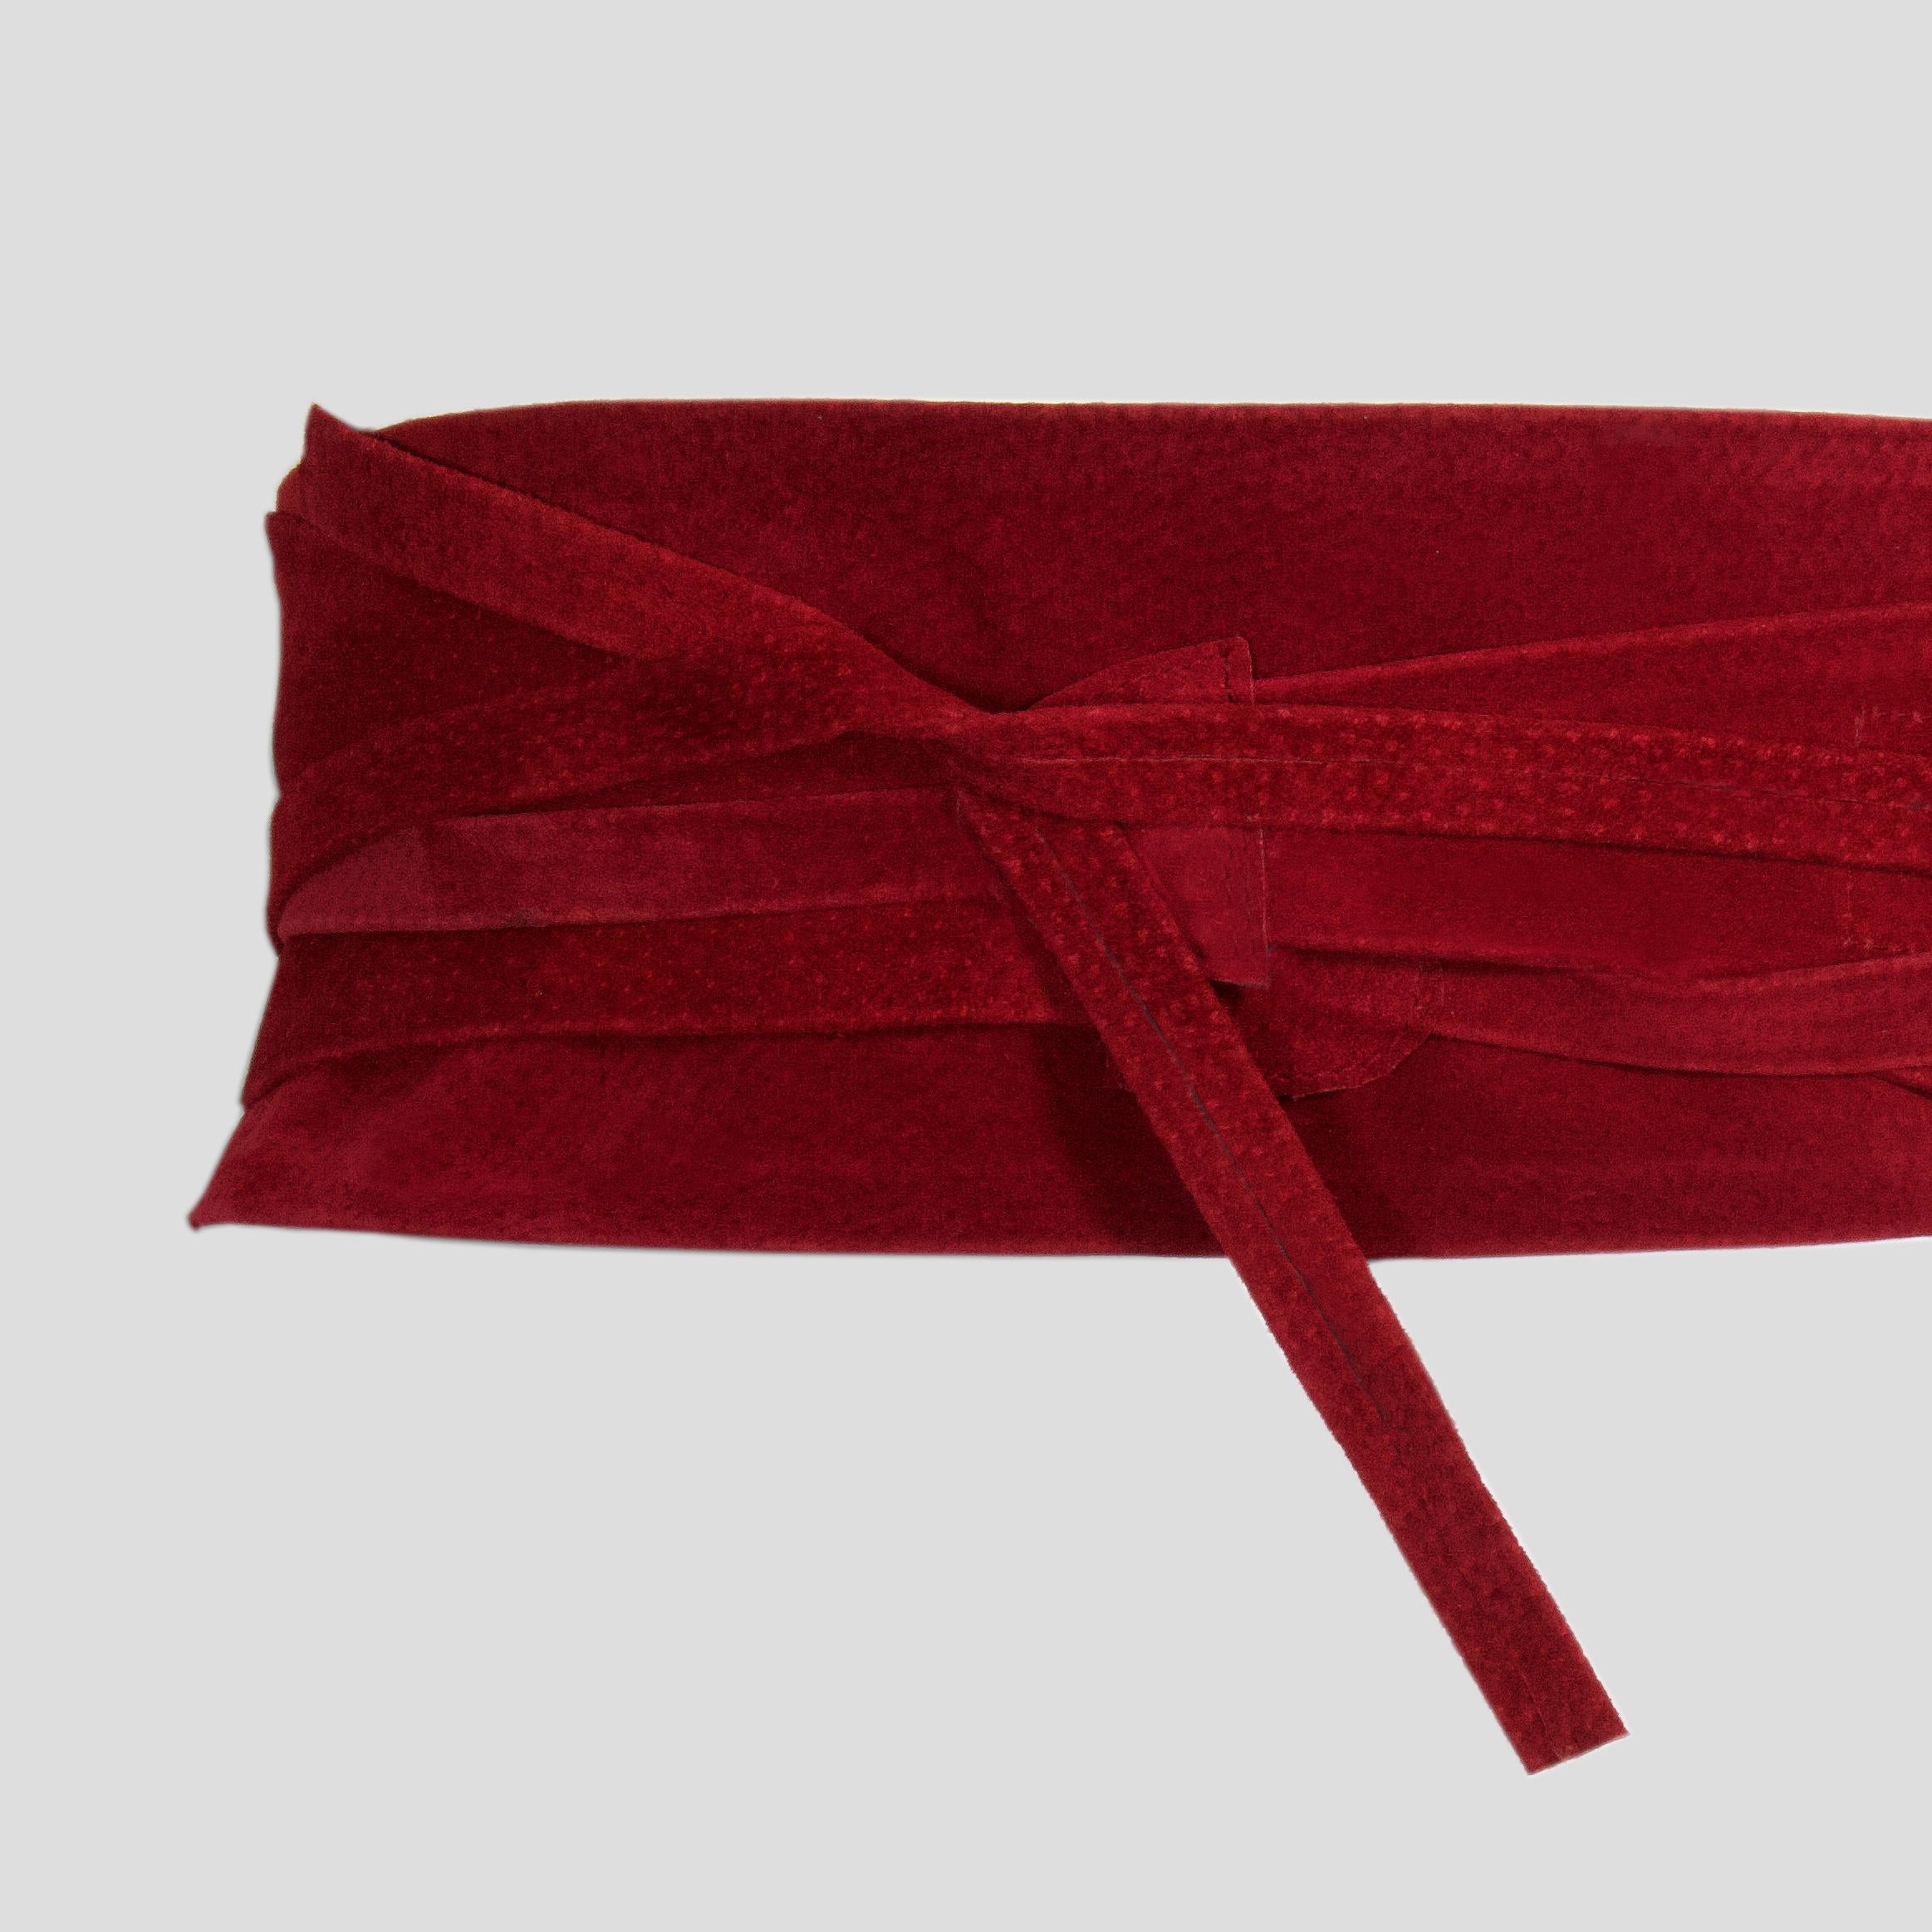 Viktor Sabo - Red Suede - Wrap Belt - Wraparound Tie Detail / Fasten - NEW  1